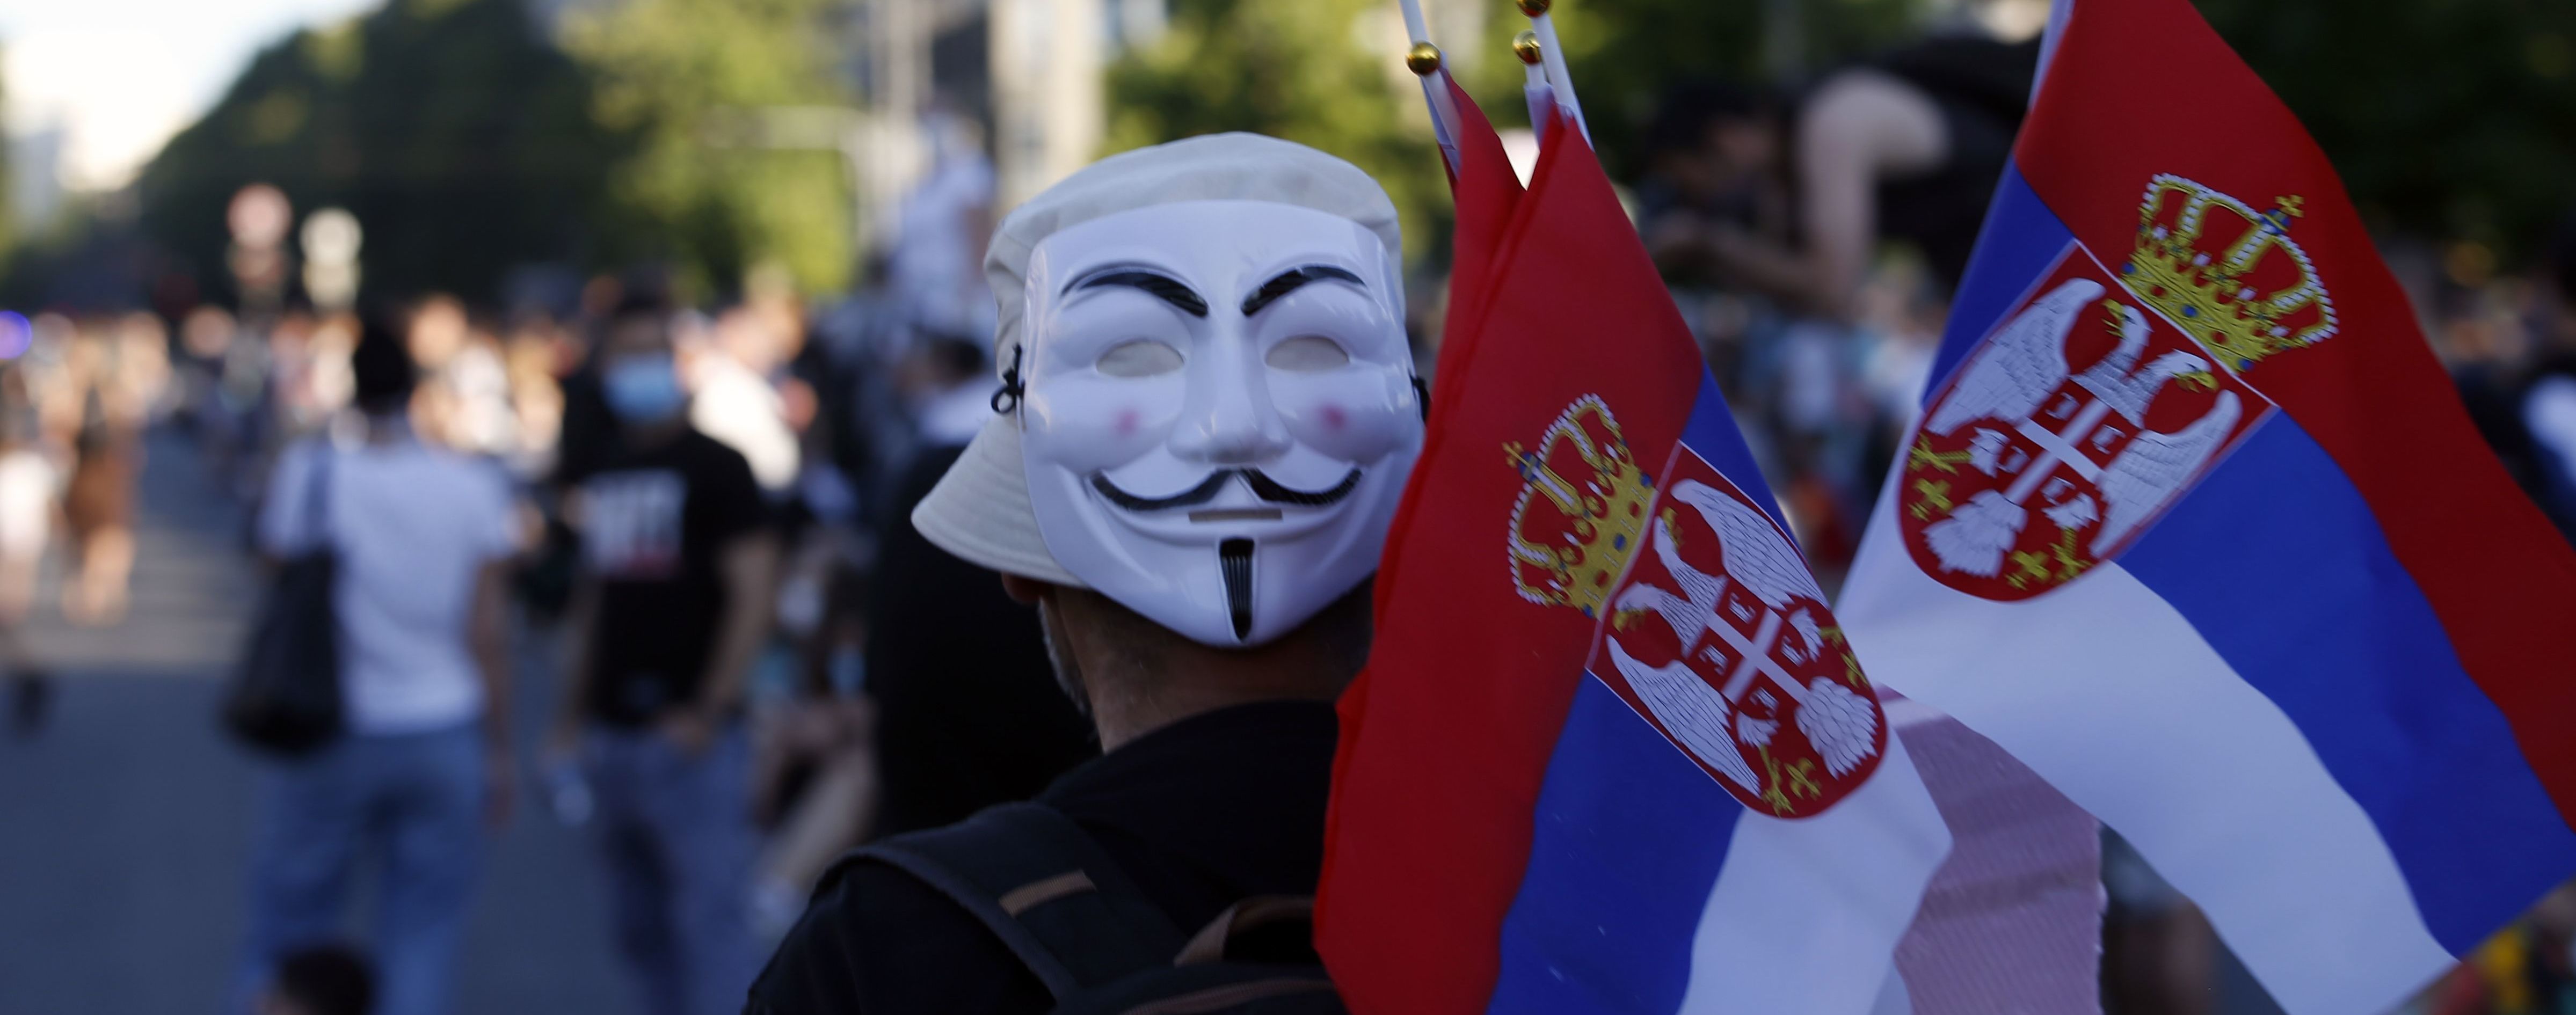 Сербські ЗМІ повідомили про "найманців з України": посольство спростовує причетність до заворушень